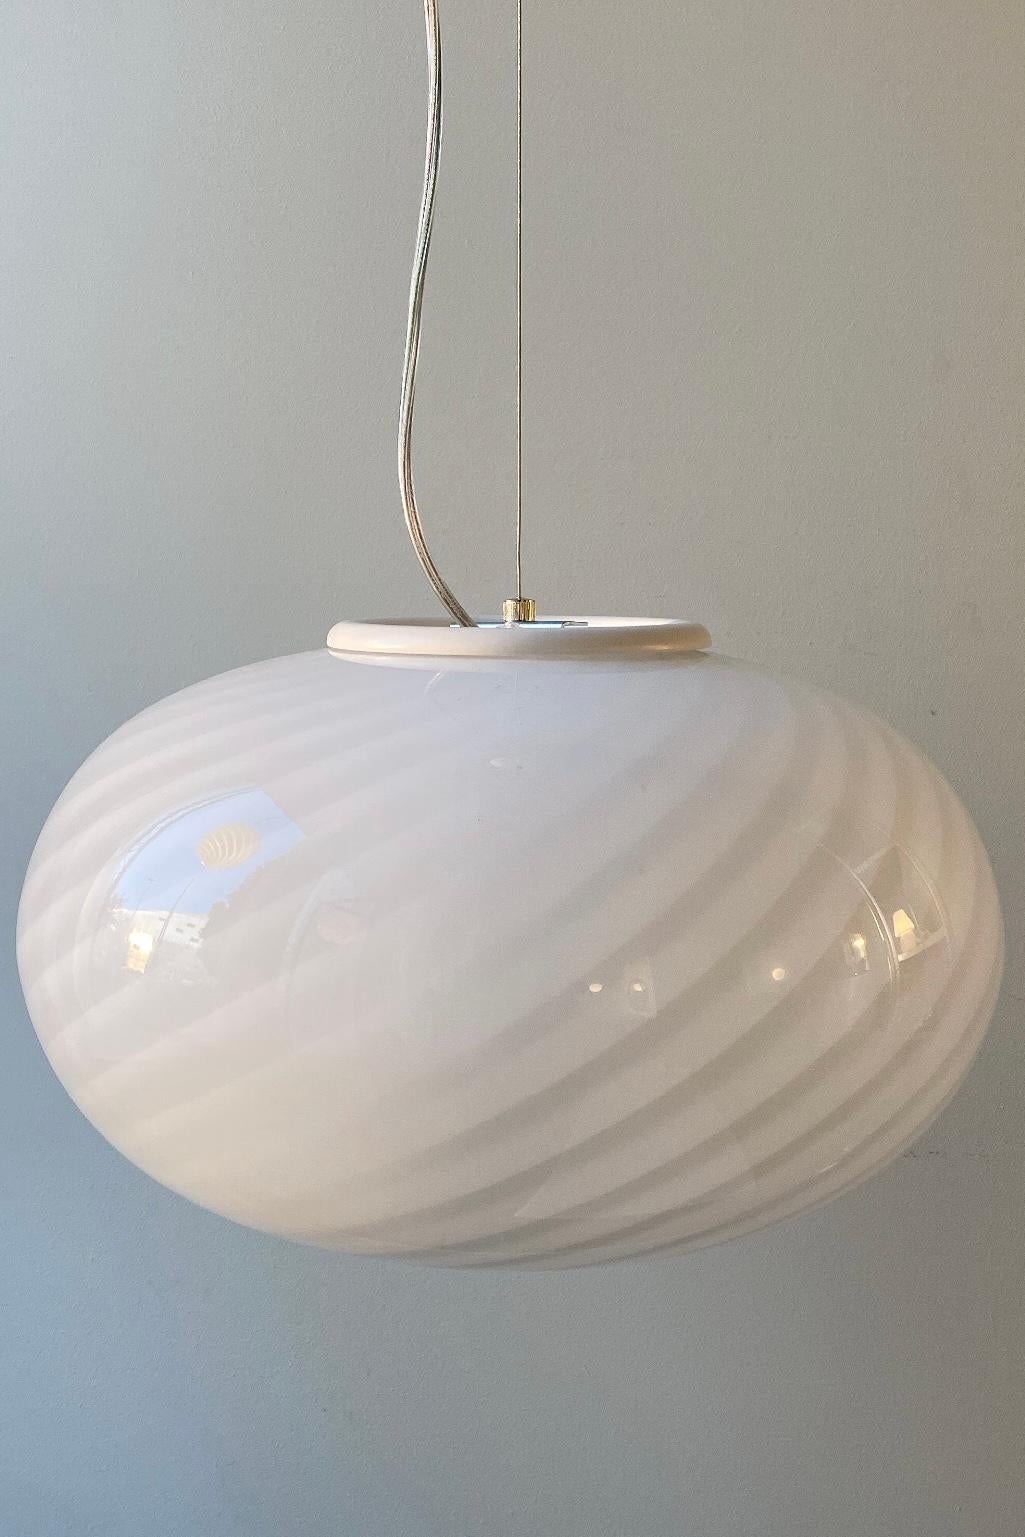 Vintage Murano lampe i hvid glas med en fantastisk smuk swirl. Mundblæst i oval form. Håndlavet i Italien, 1970erne, og kommer med ny transparent ledning.
D:40 cm.

